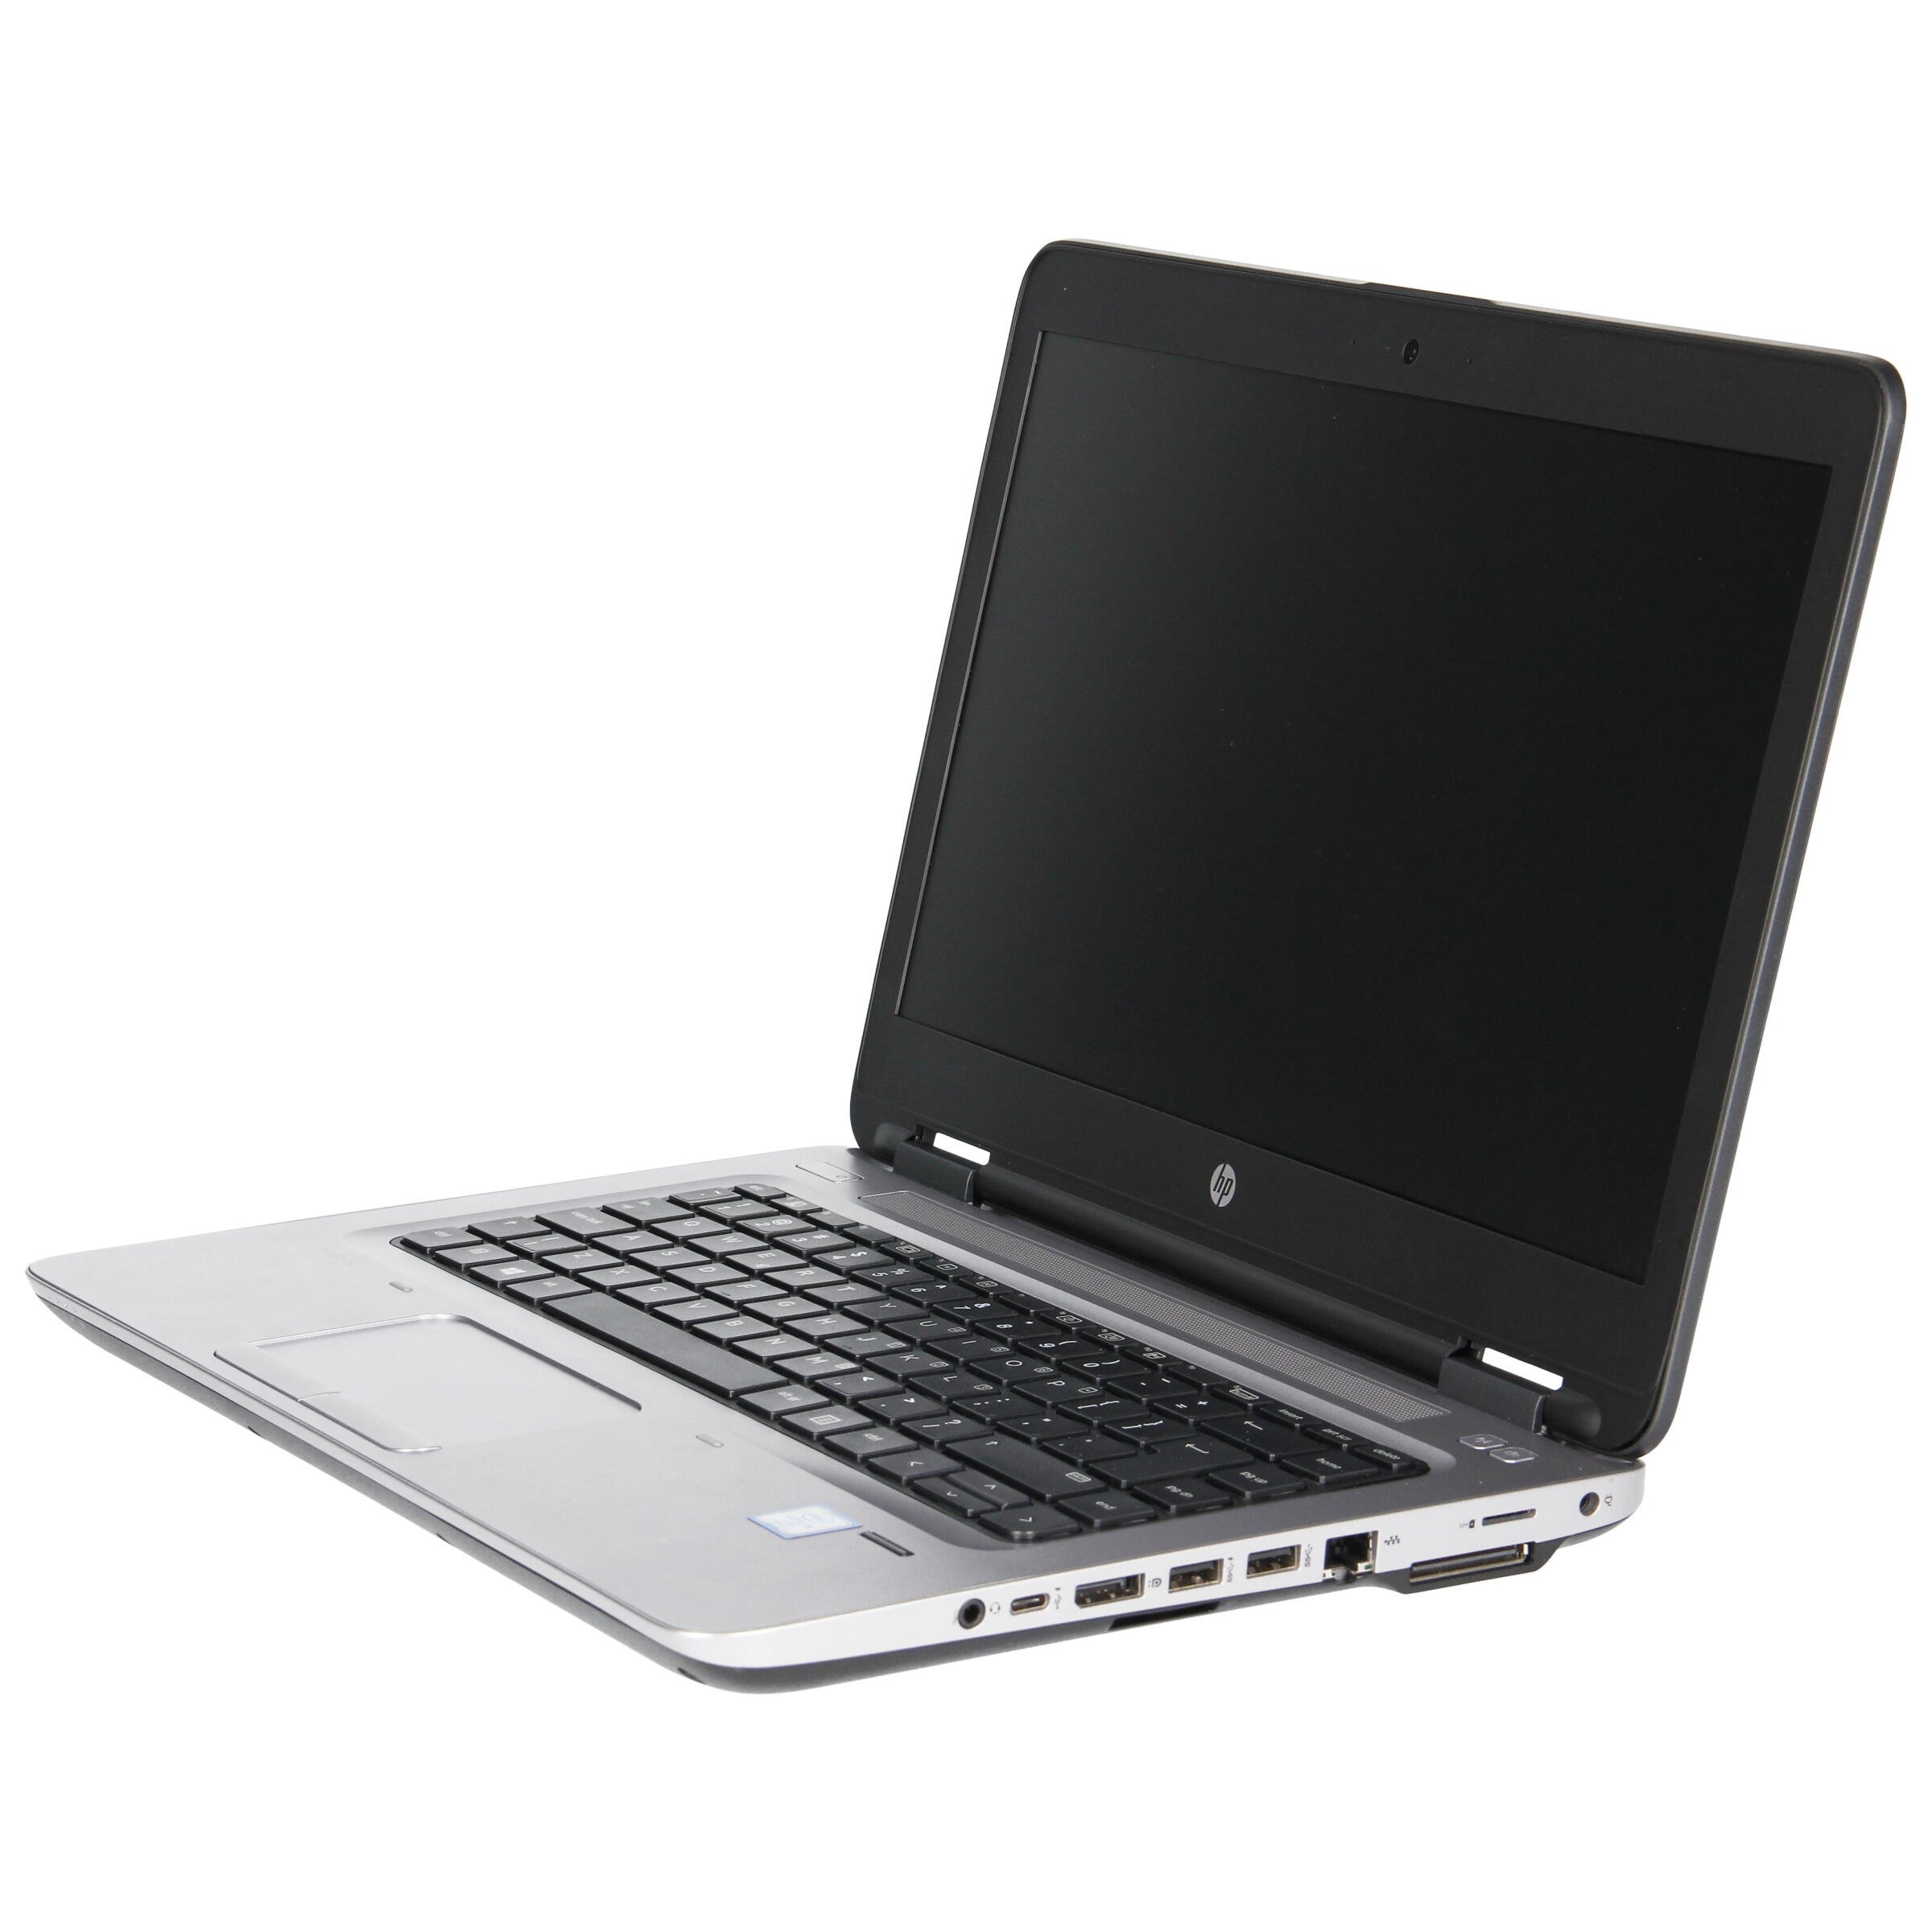 Laptop Hp Probook 640 G3 I5 7300u 8 Gb 240 Ssd 14 Hd W10pro B Rnewpl 1103